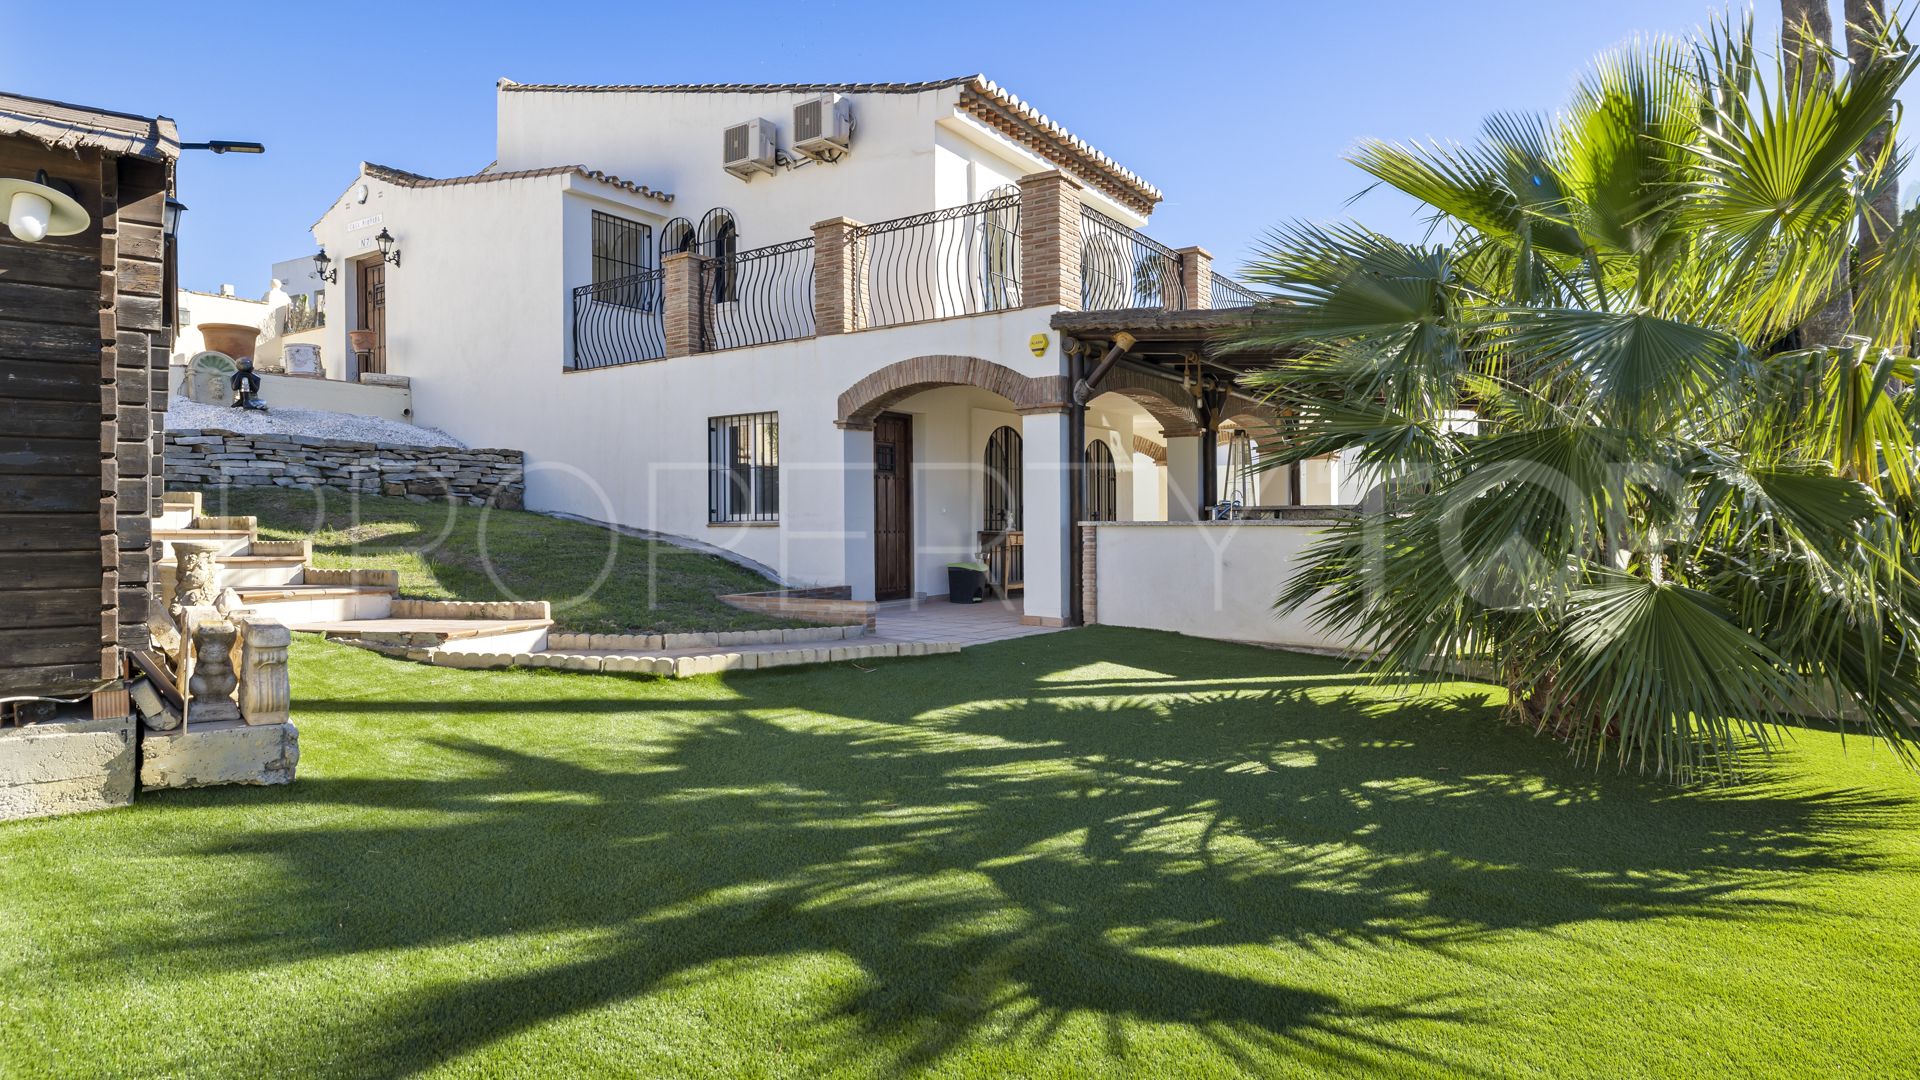 For sale villa in Valle Romano